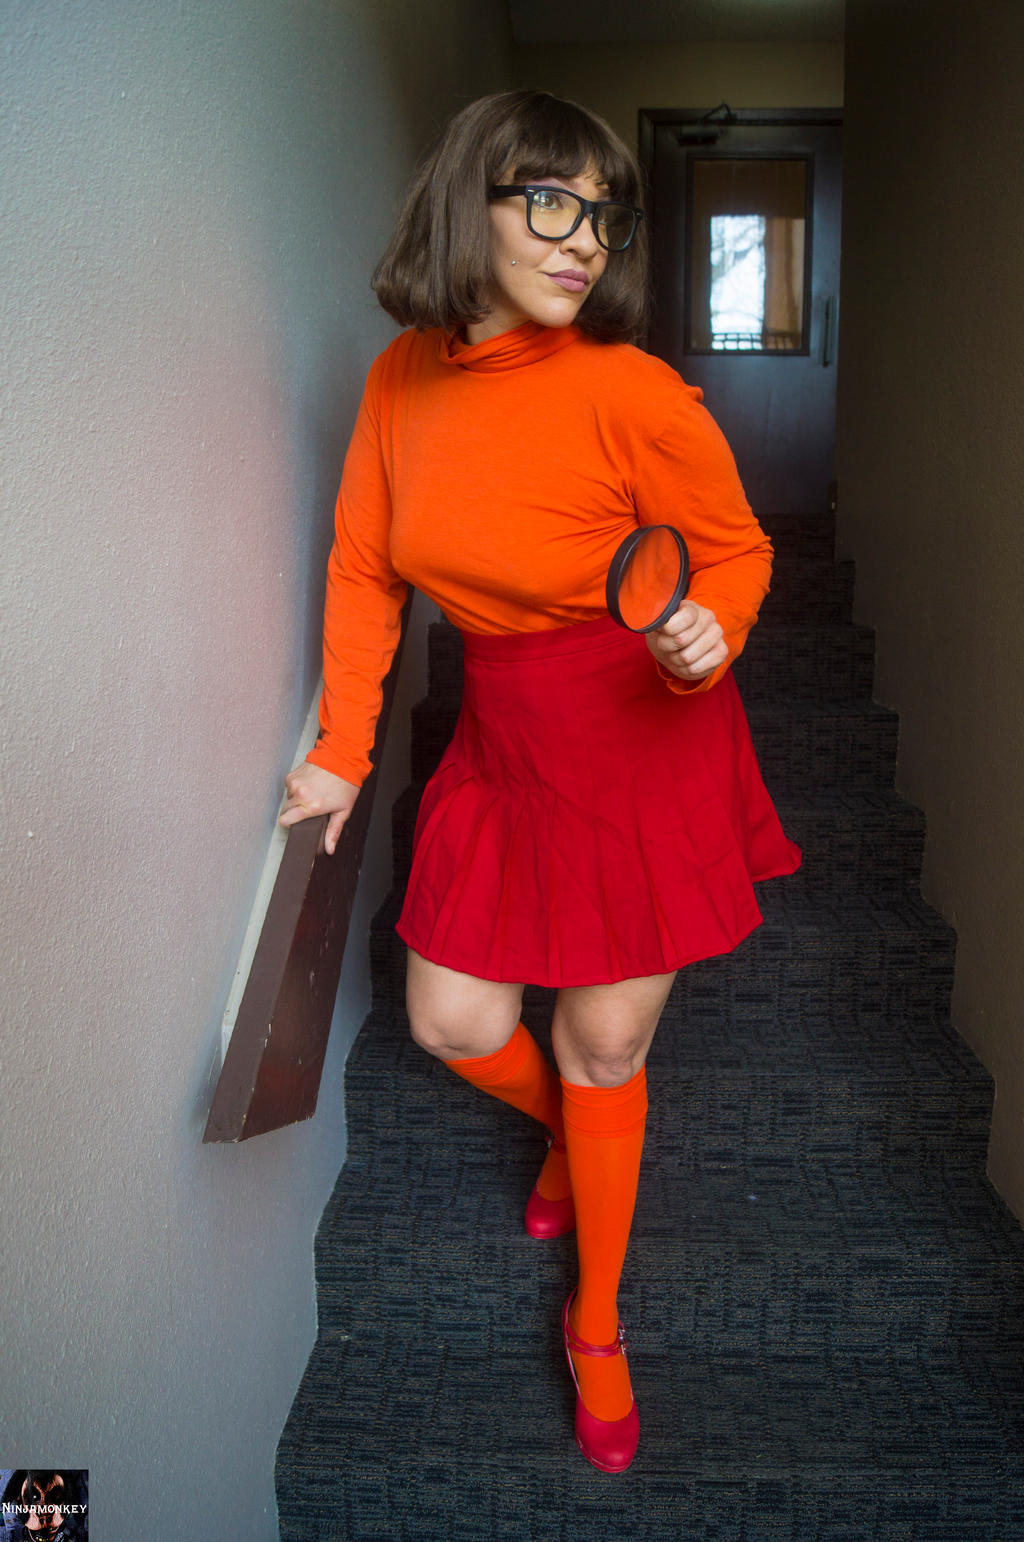 Velma Dinkly by ninjamonkey5082 on DeviantArt